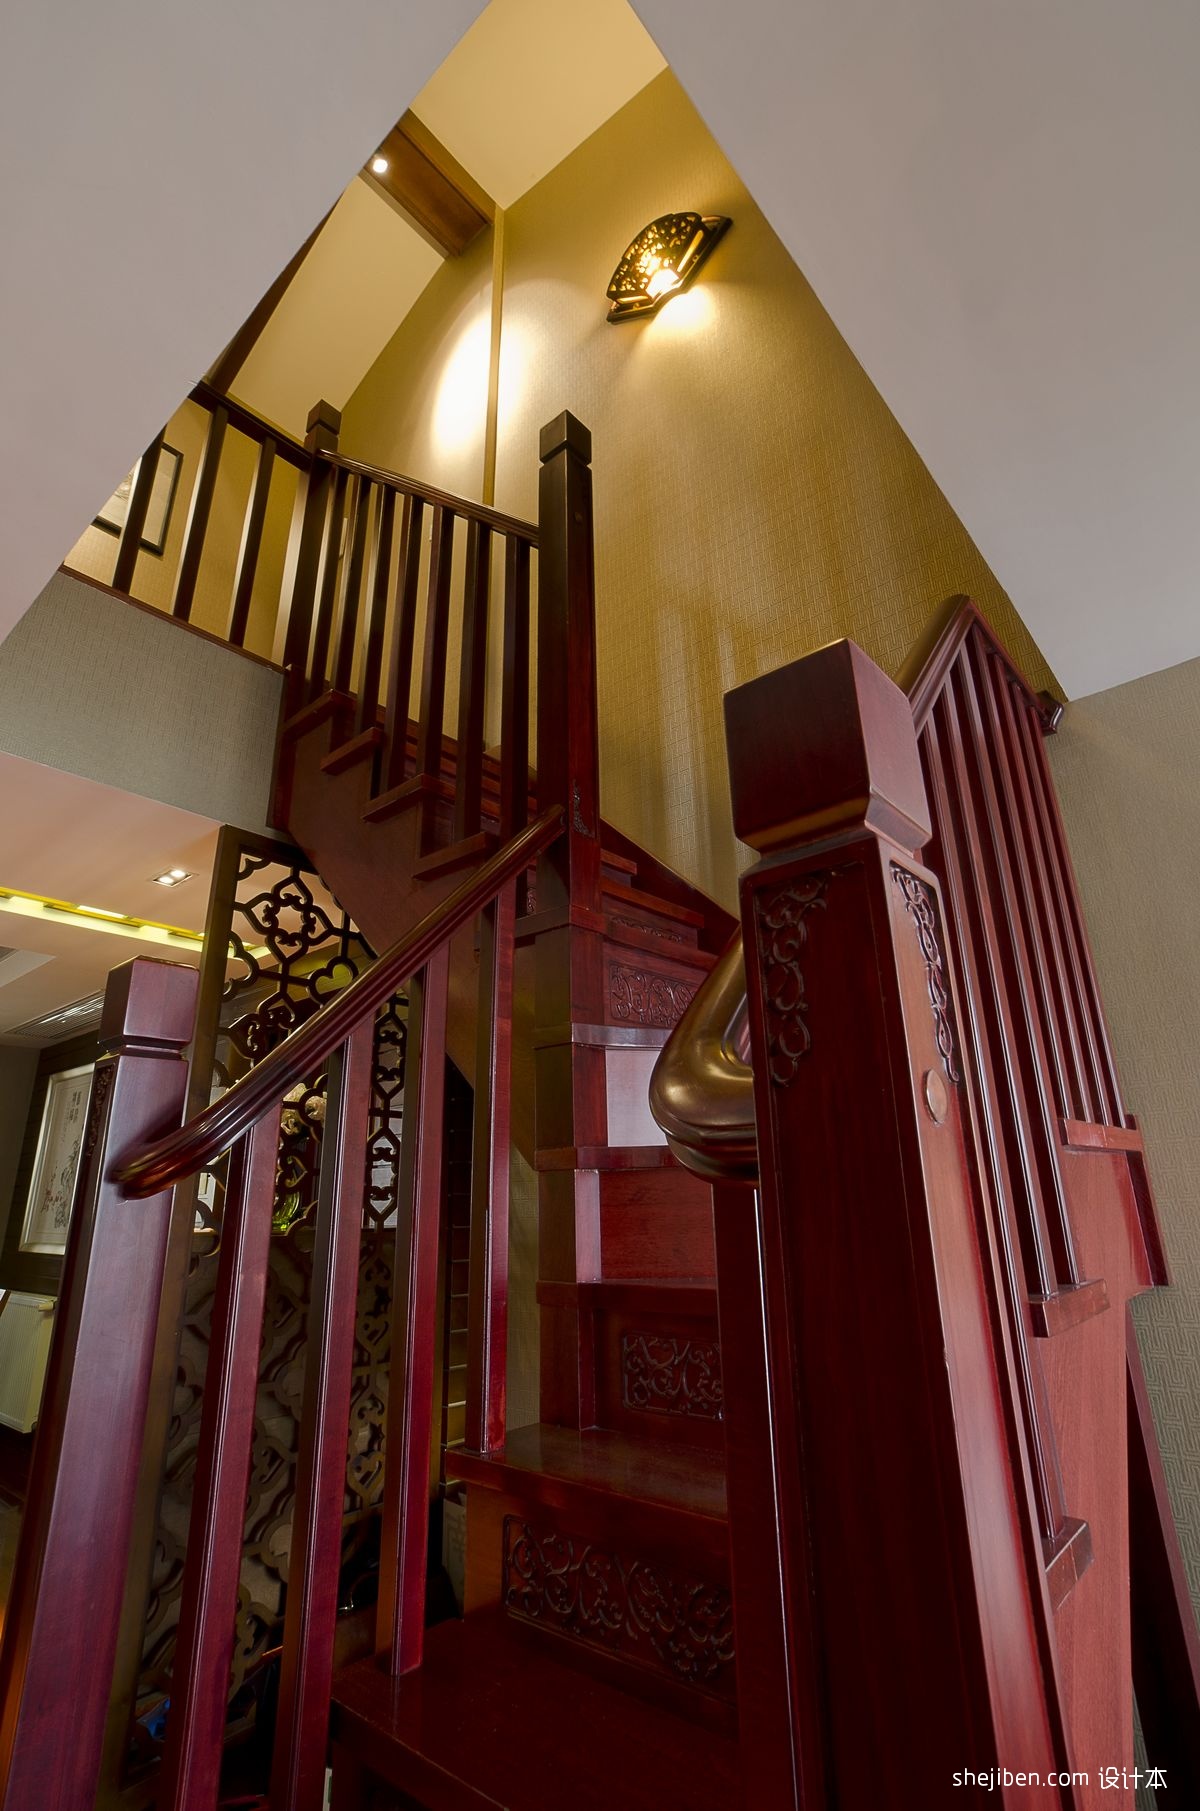 简约风格复式家居客厅楼梯设计_装修图片-保障网装修效果图